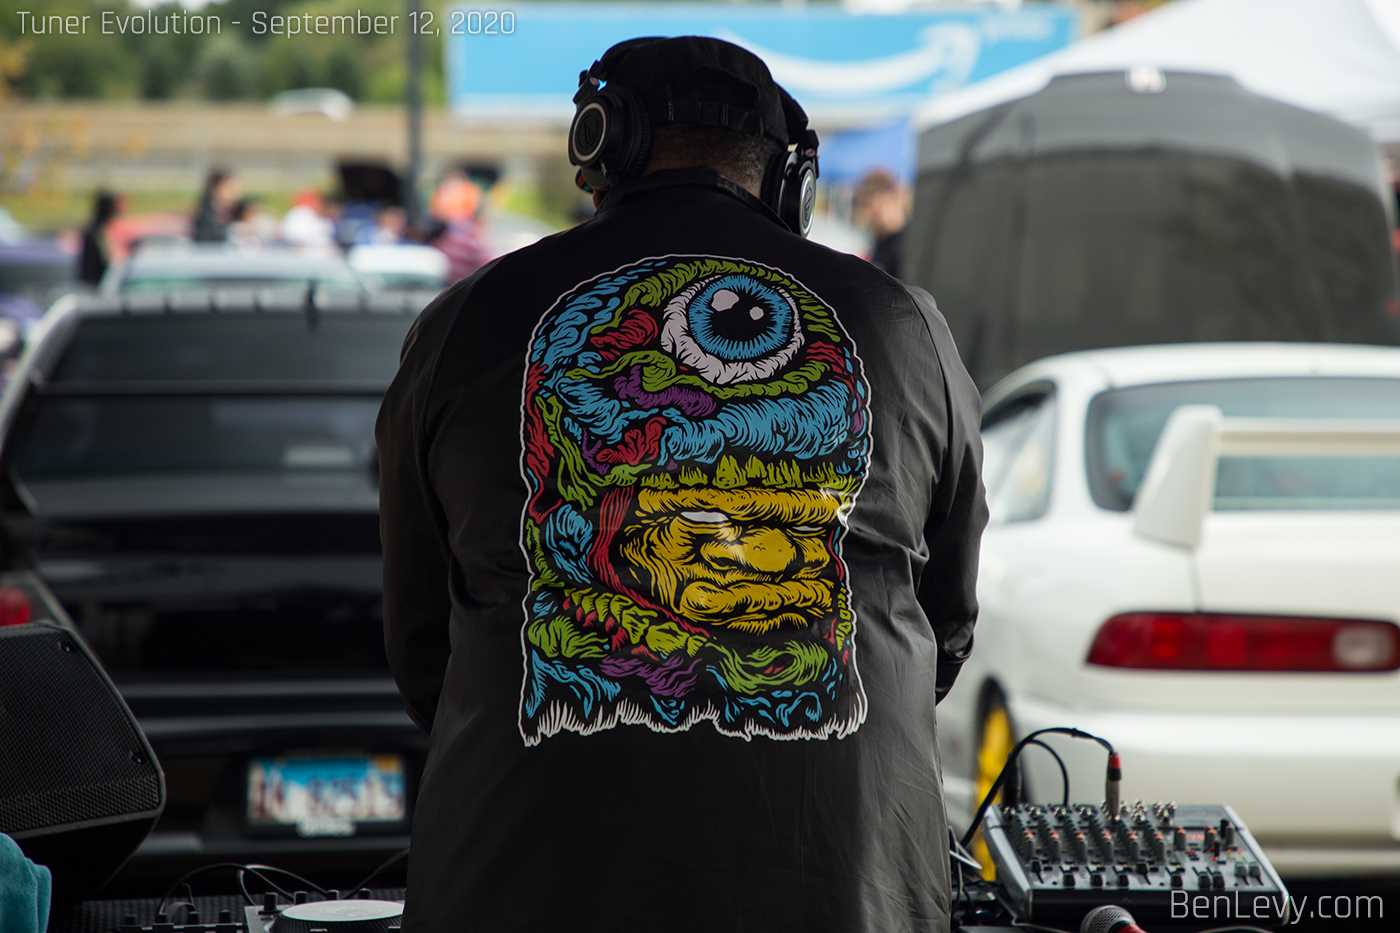 DJ at Tuner Evolution 2020